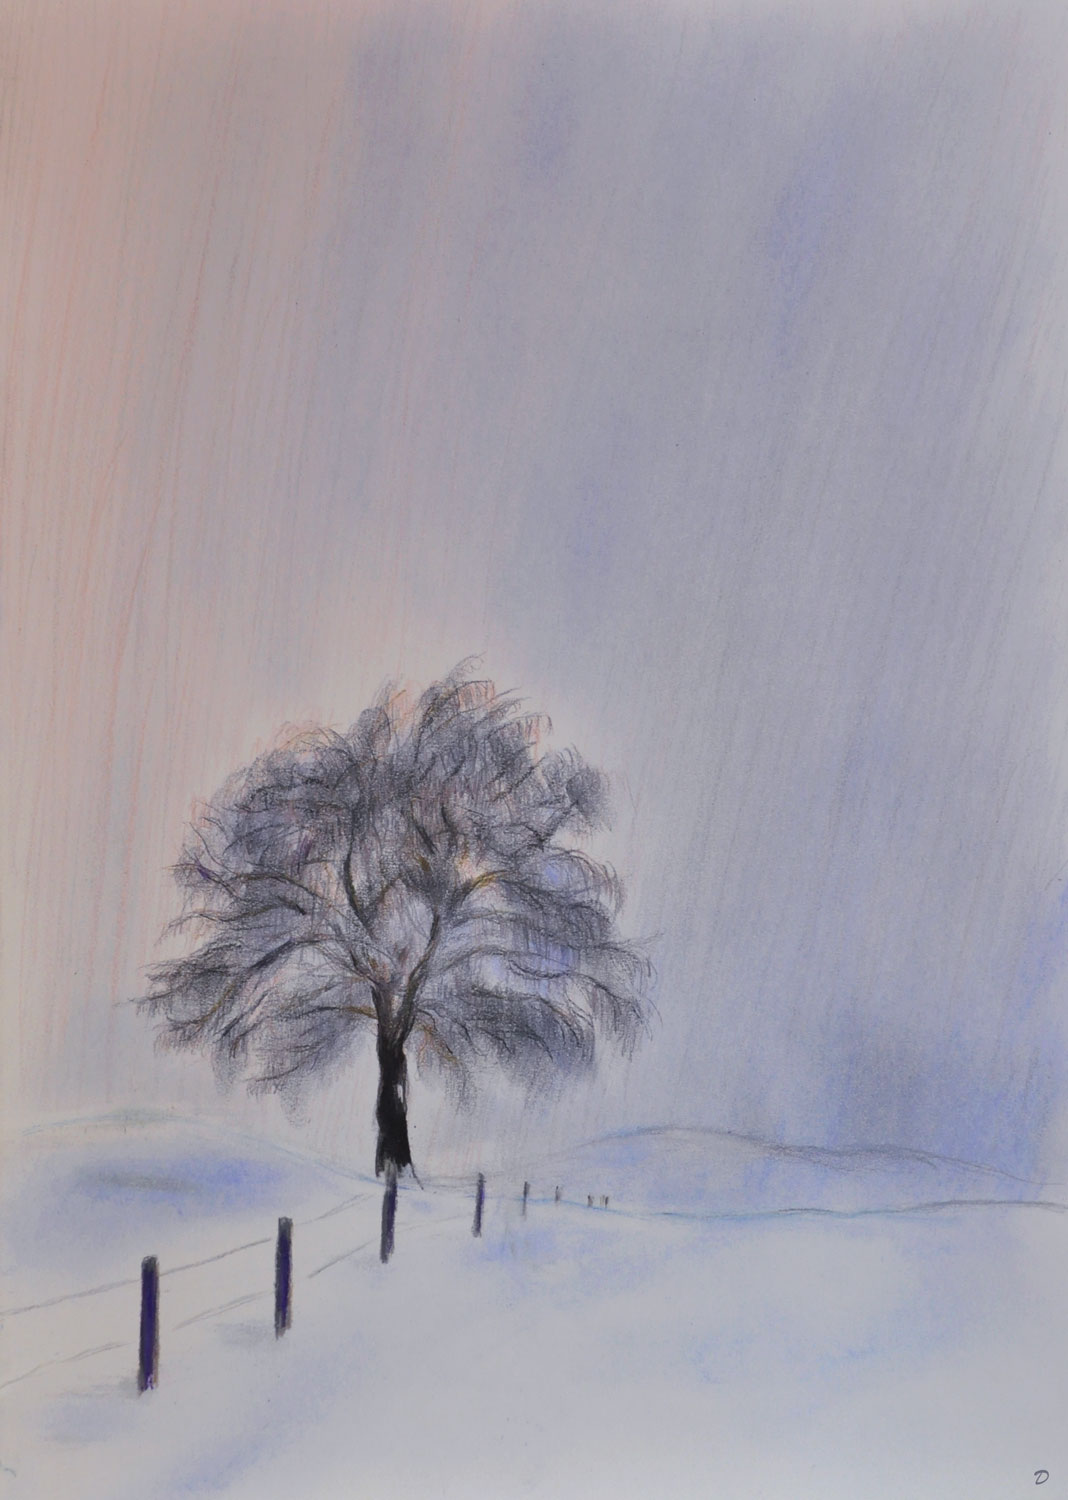 Arbre en hiver, Penthalaz, 2. Crayon de couleur et pastel sur papier, 42x30, 2022